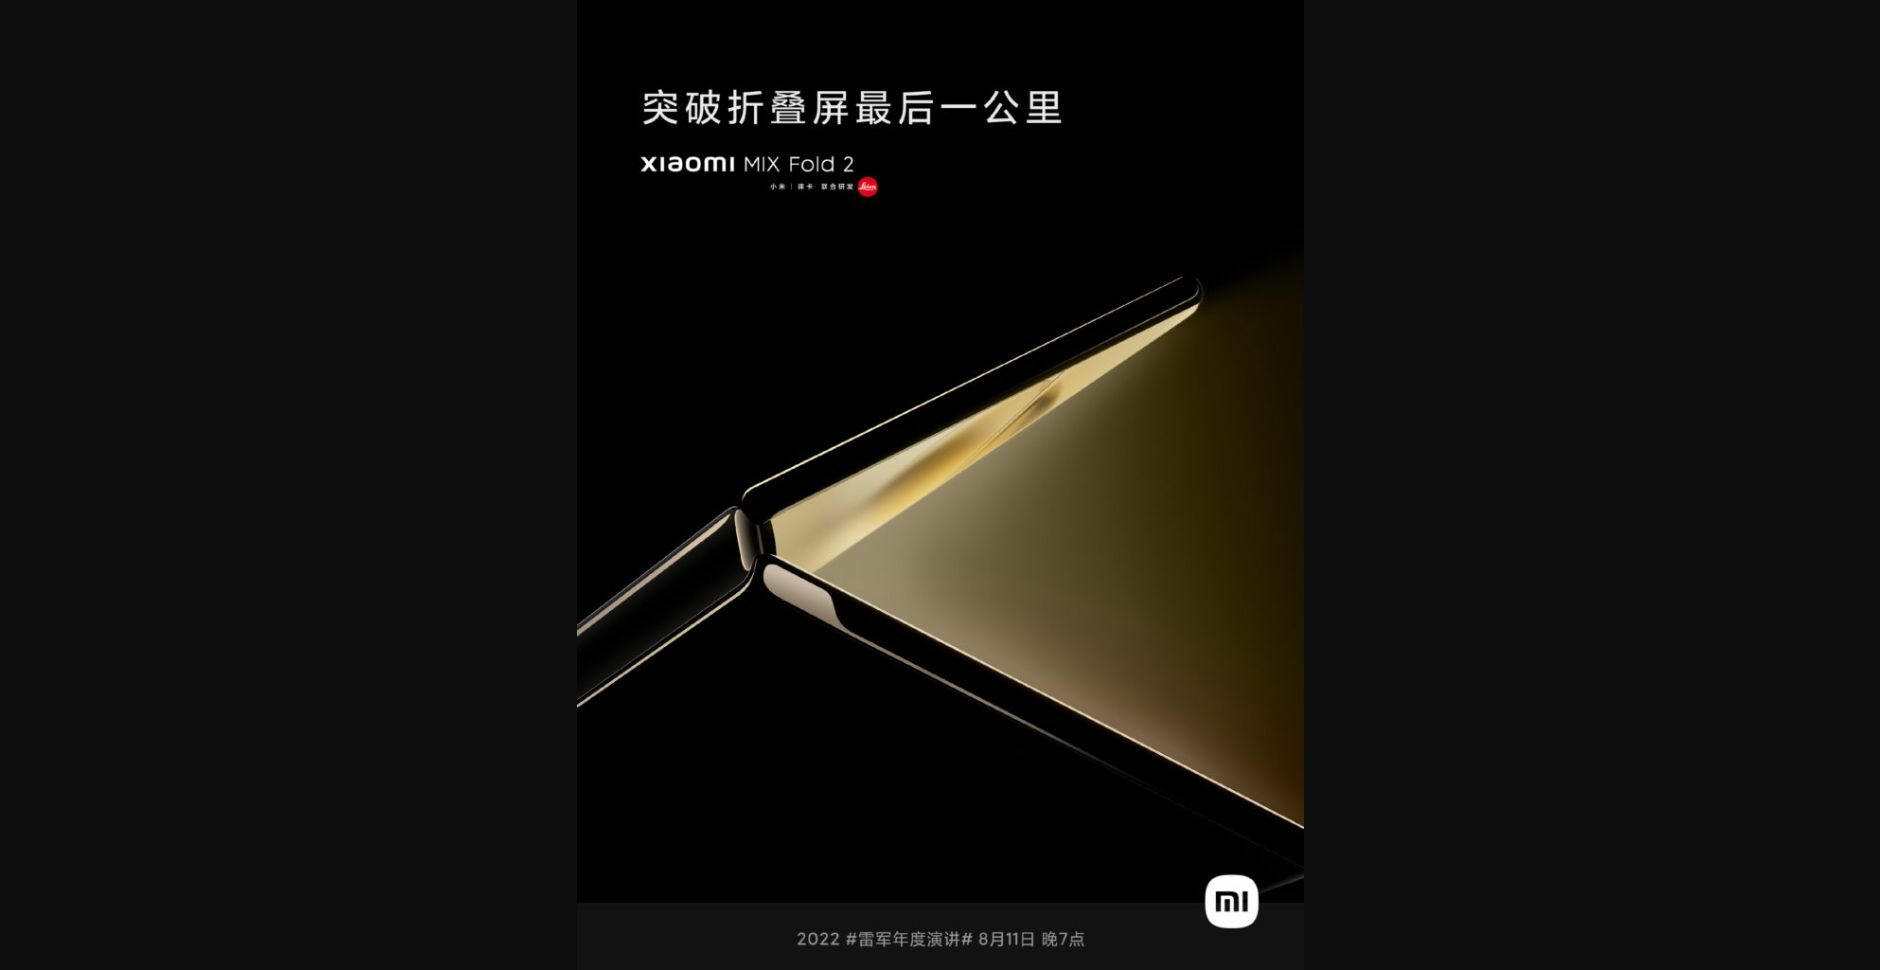 Xiaomi Mi Mix Fold 2